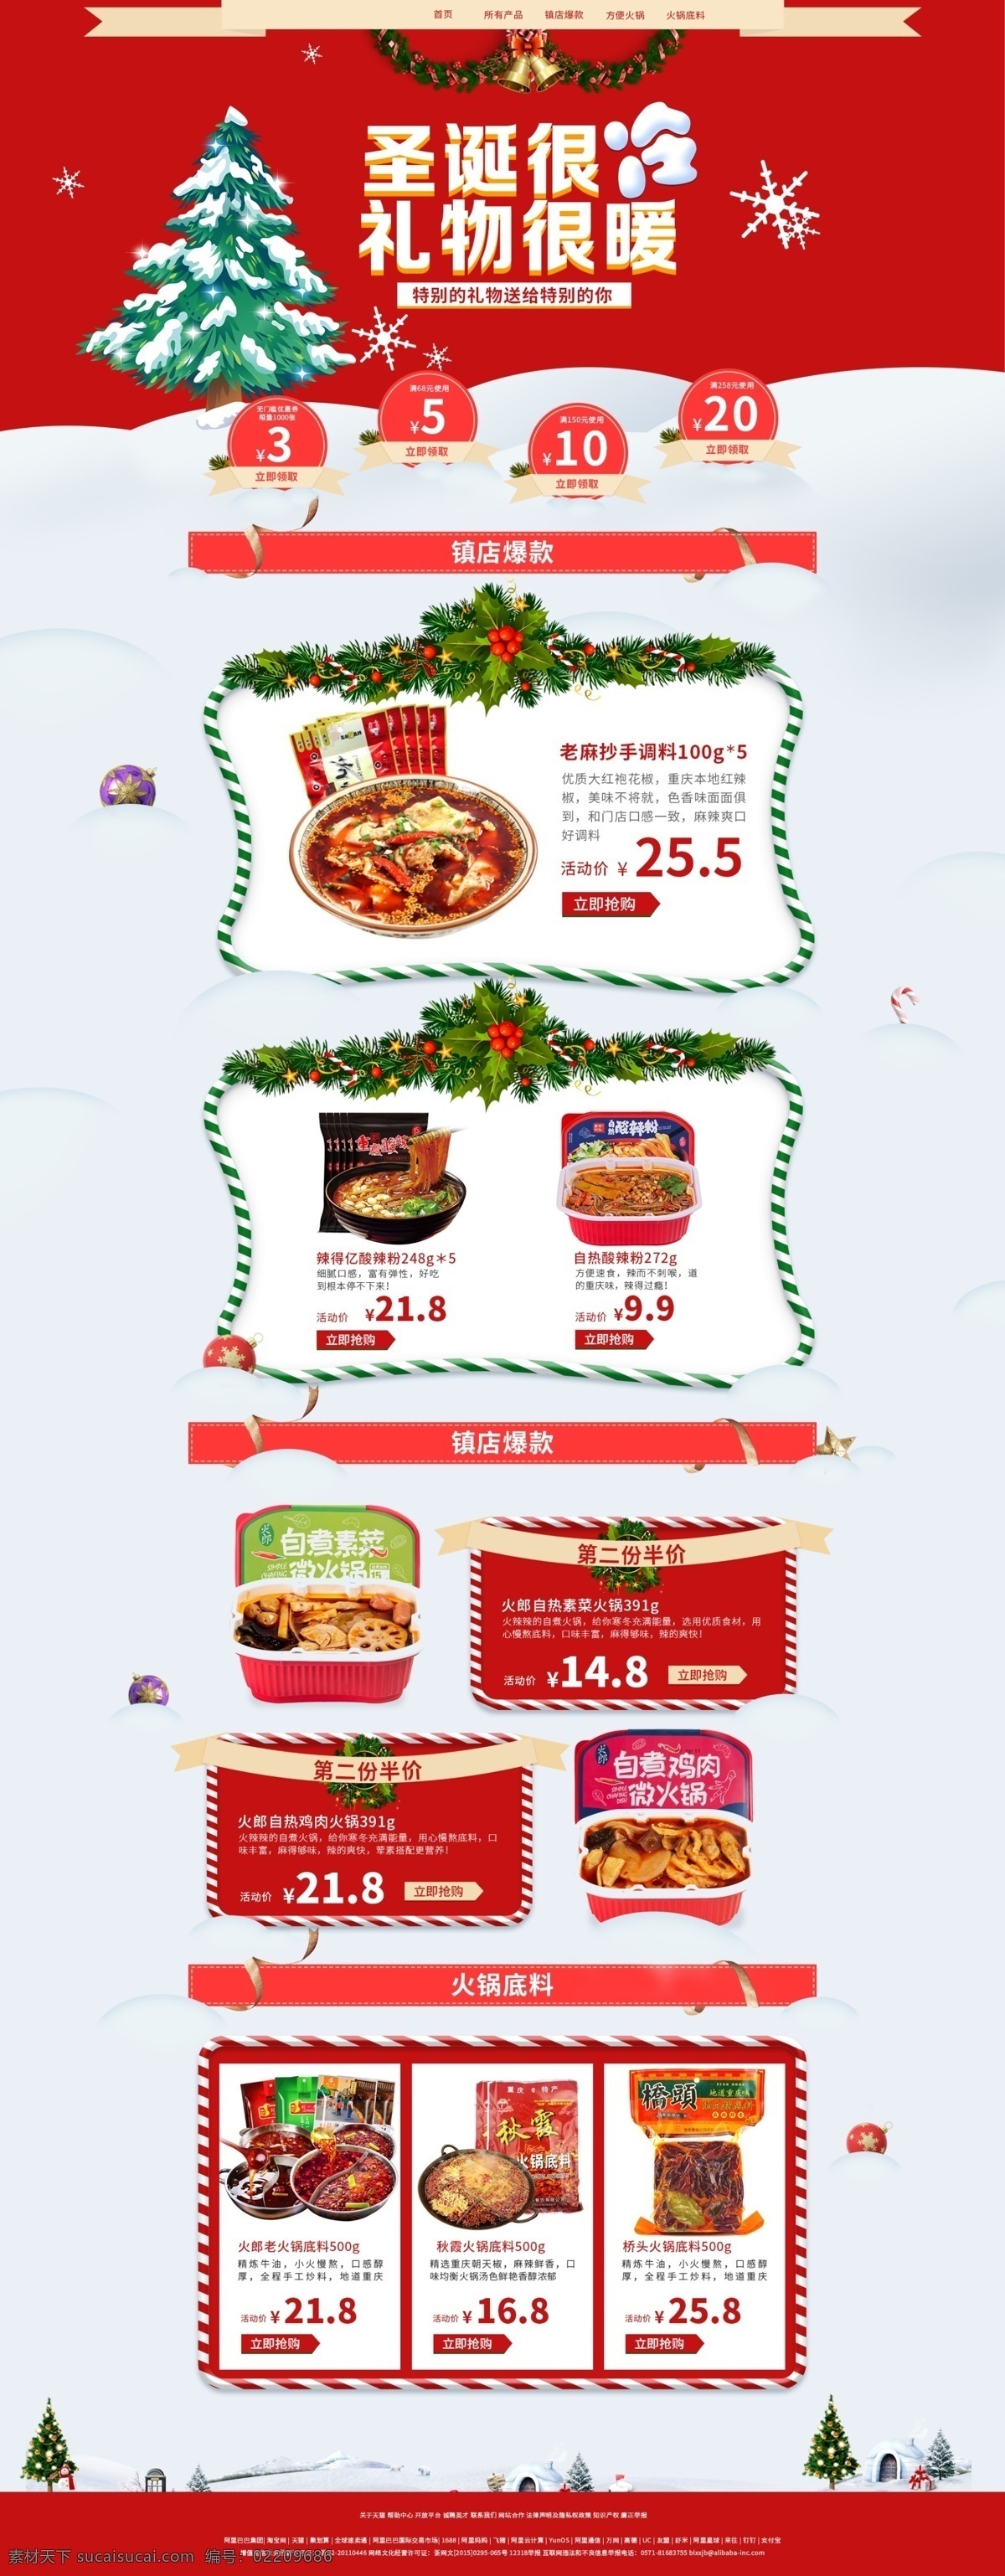 圣诞 专题 网页 主题 模板 圣诞节 红色 绿色 标签 促销 丝带 节日 喜庆 雪地